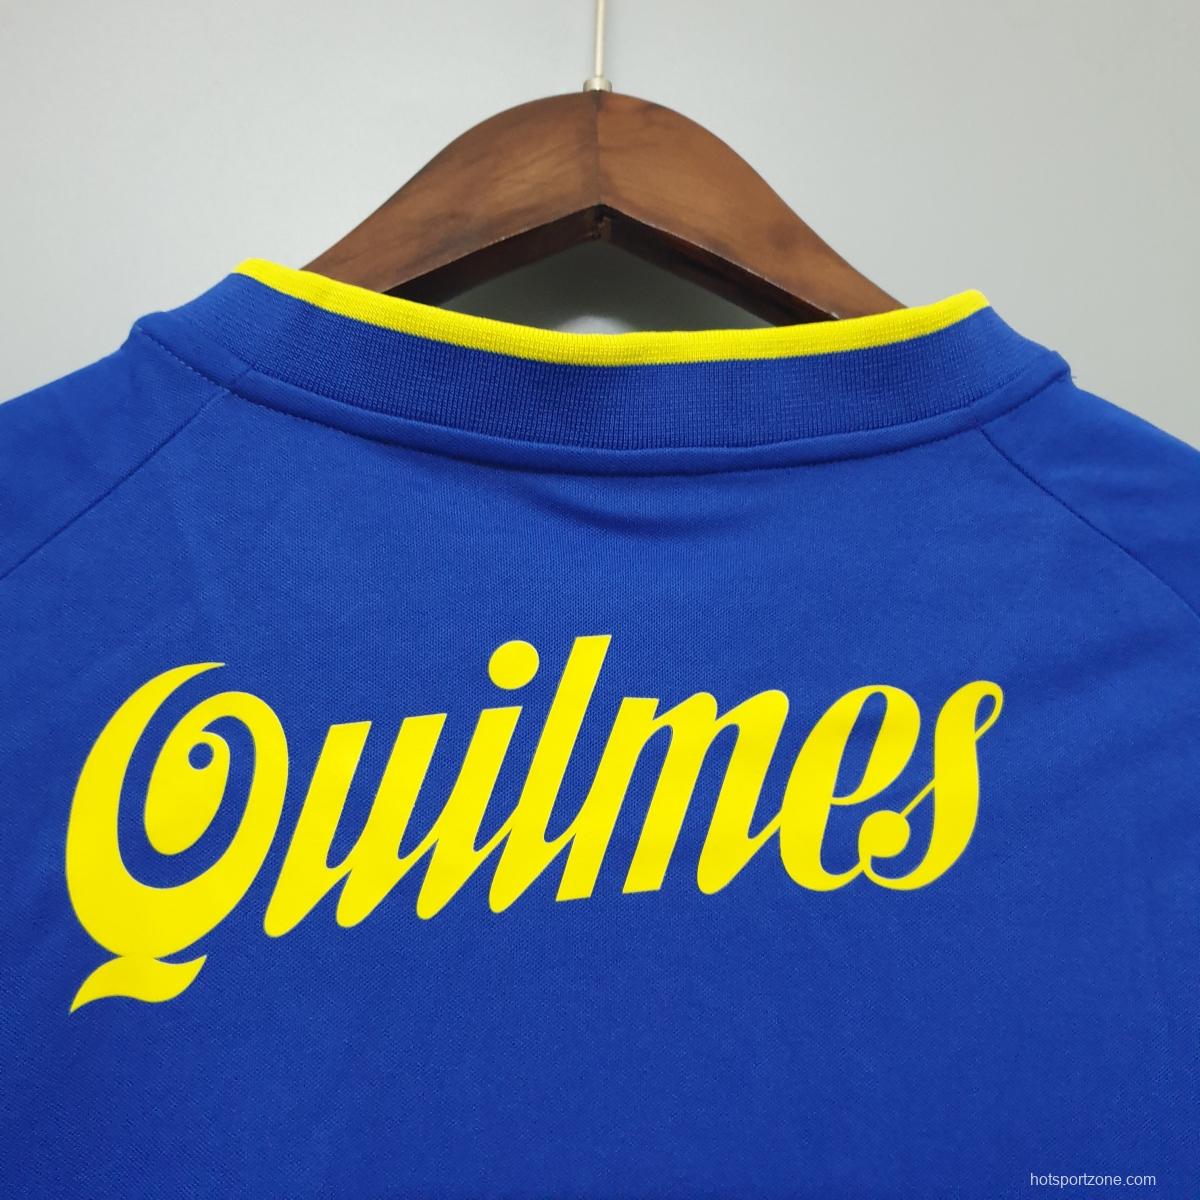 Boca Juniors 2001 retro shirt home Soccer Jersey